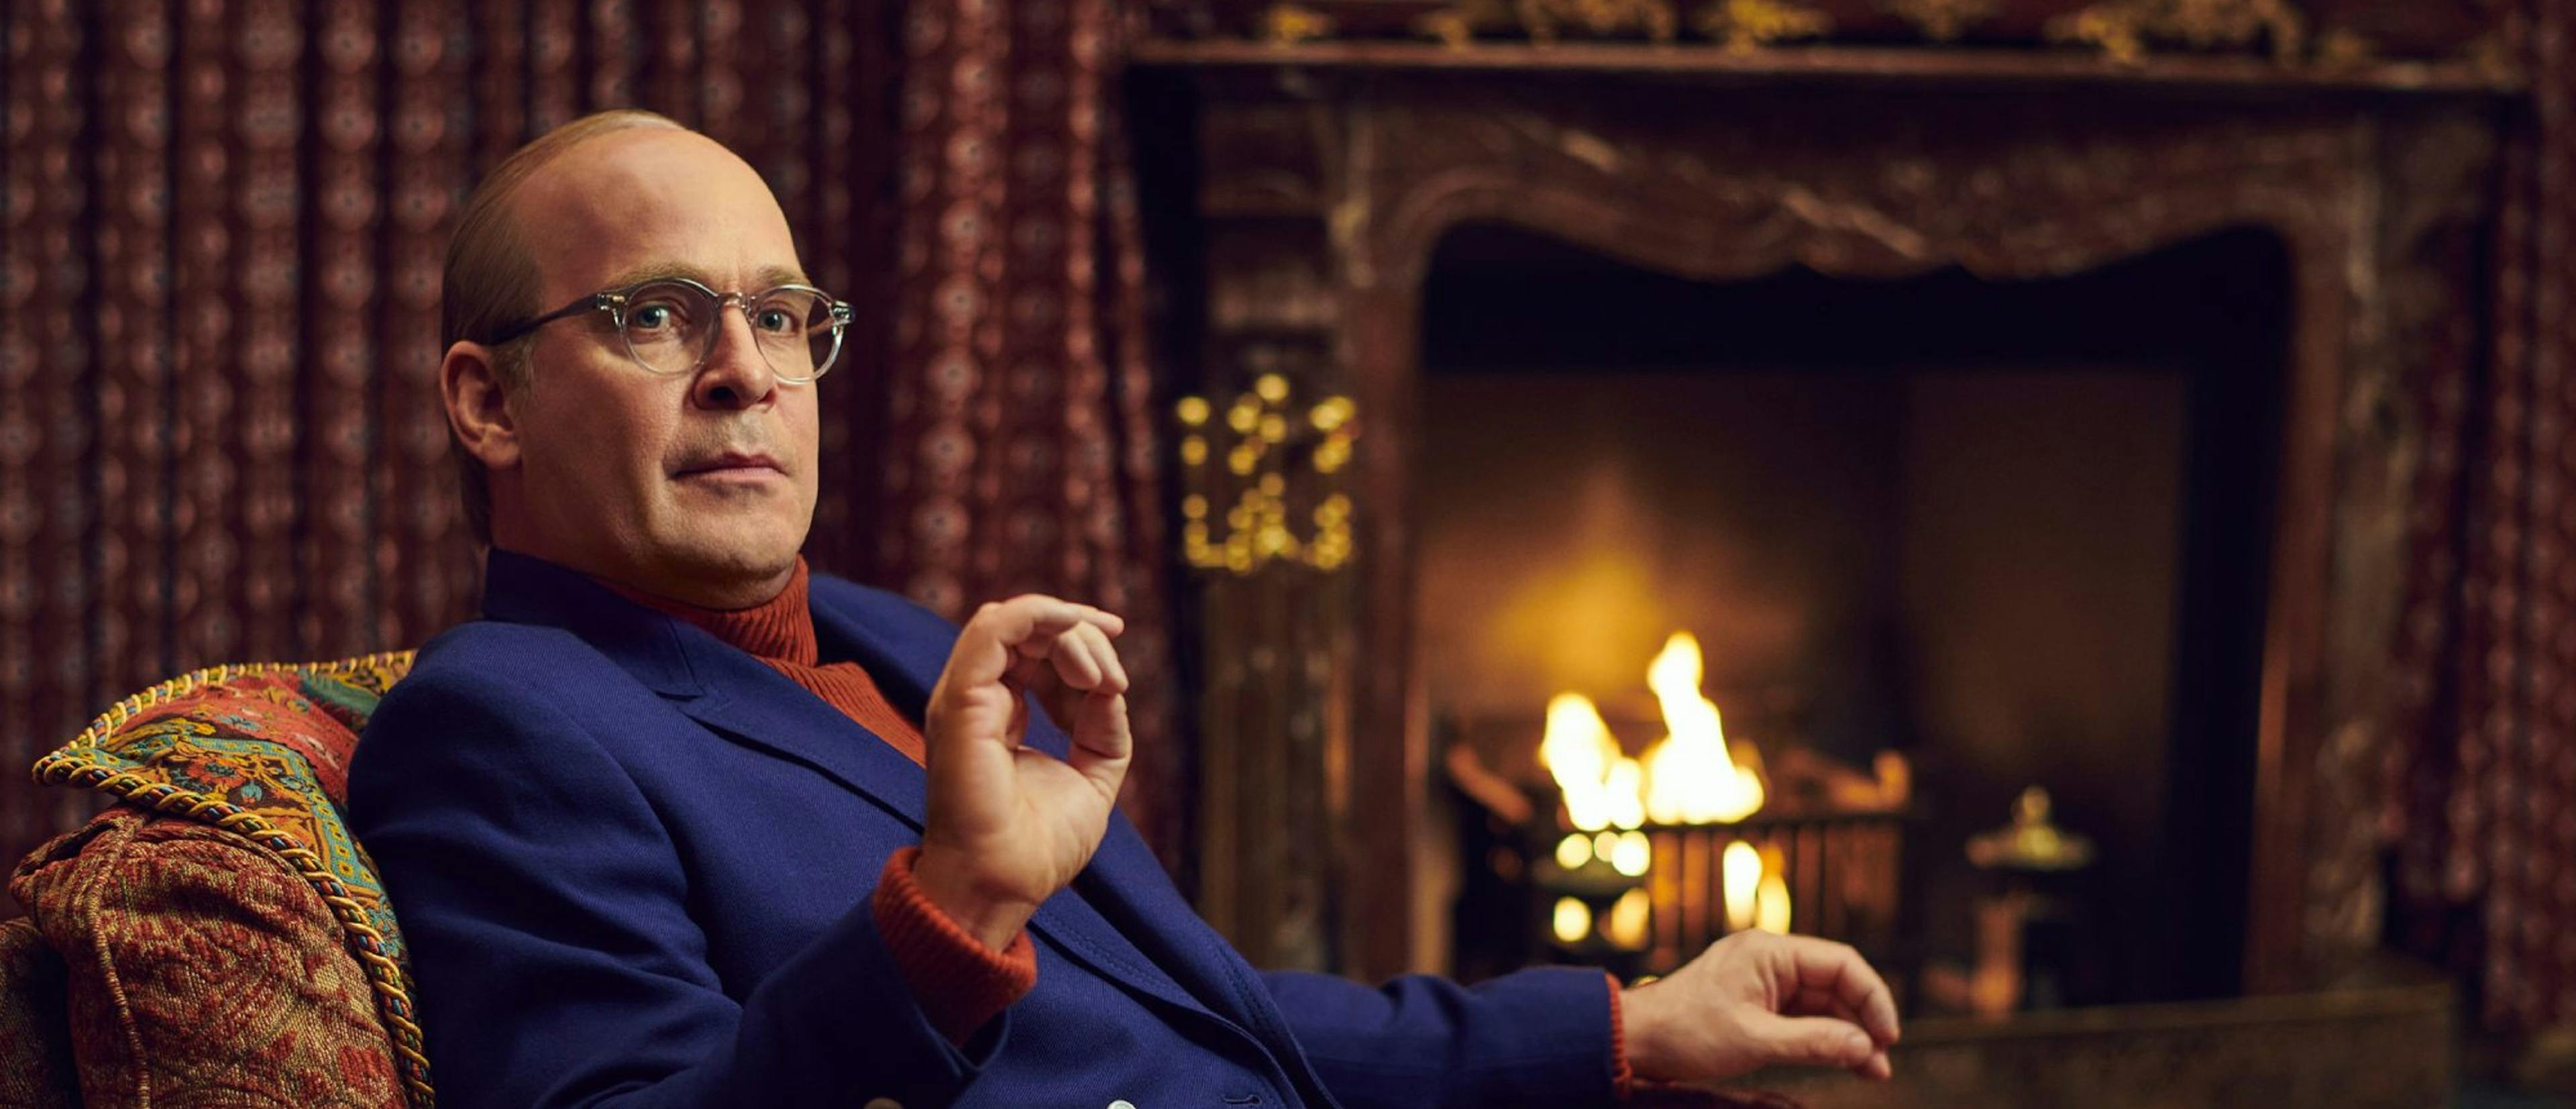 Imagen promocional de la serie 'Feud: Capote vs. the swans', protagonizada por Tom Hollander en el papel del autor de 'A sangre fría'